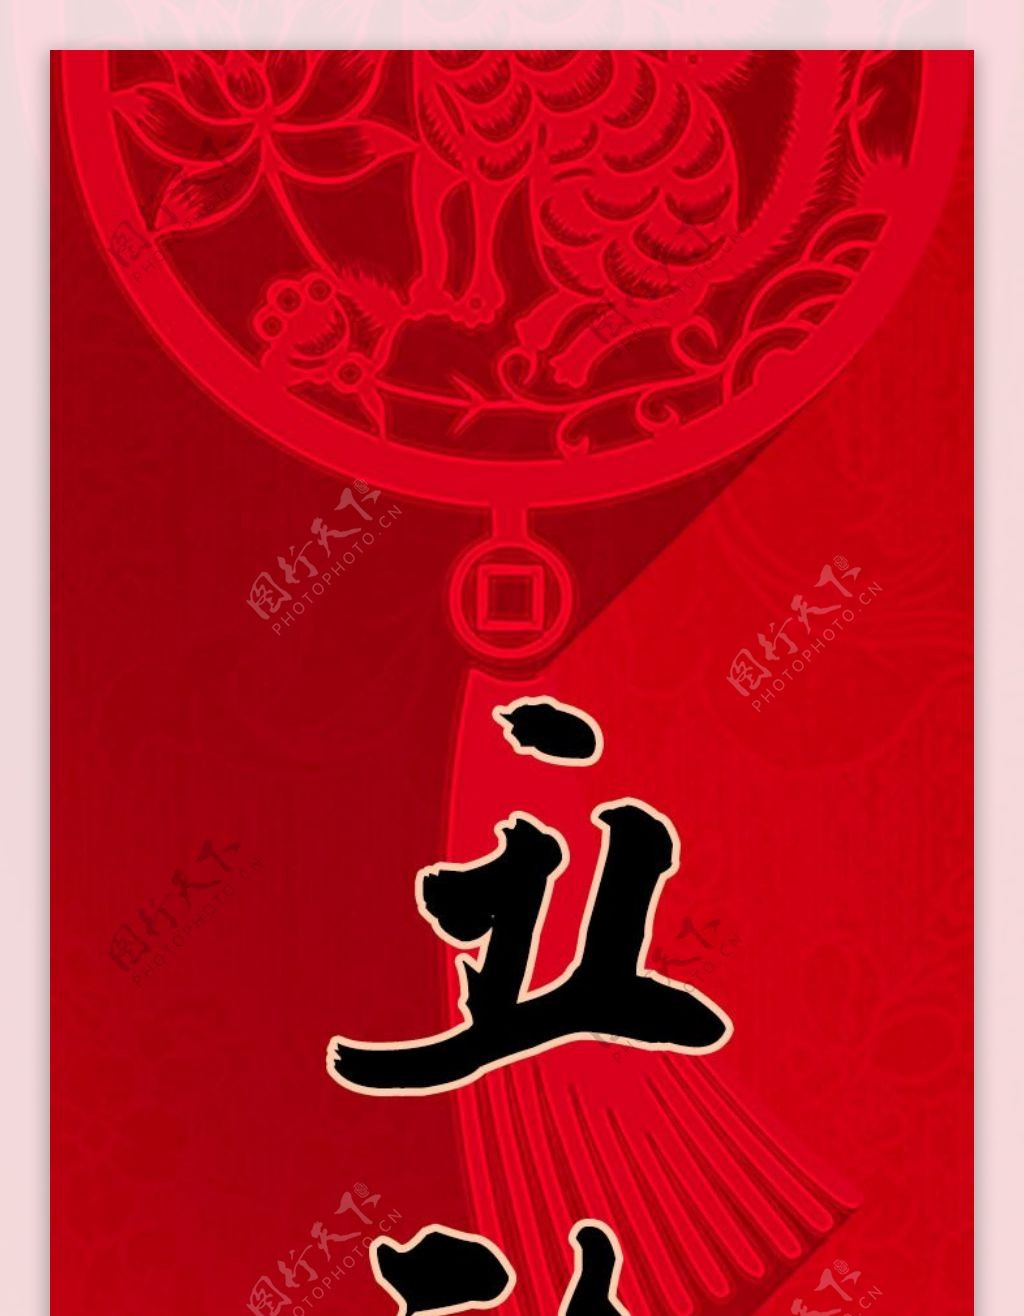 中国传统节日新年春节对联设计